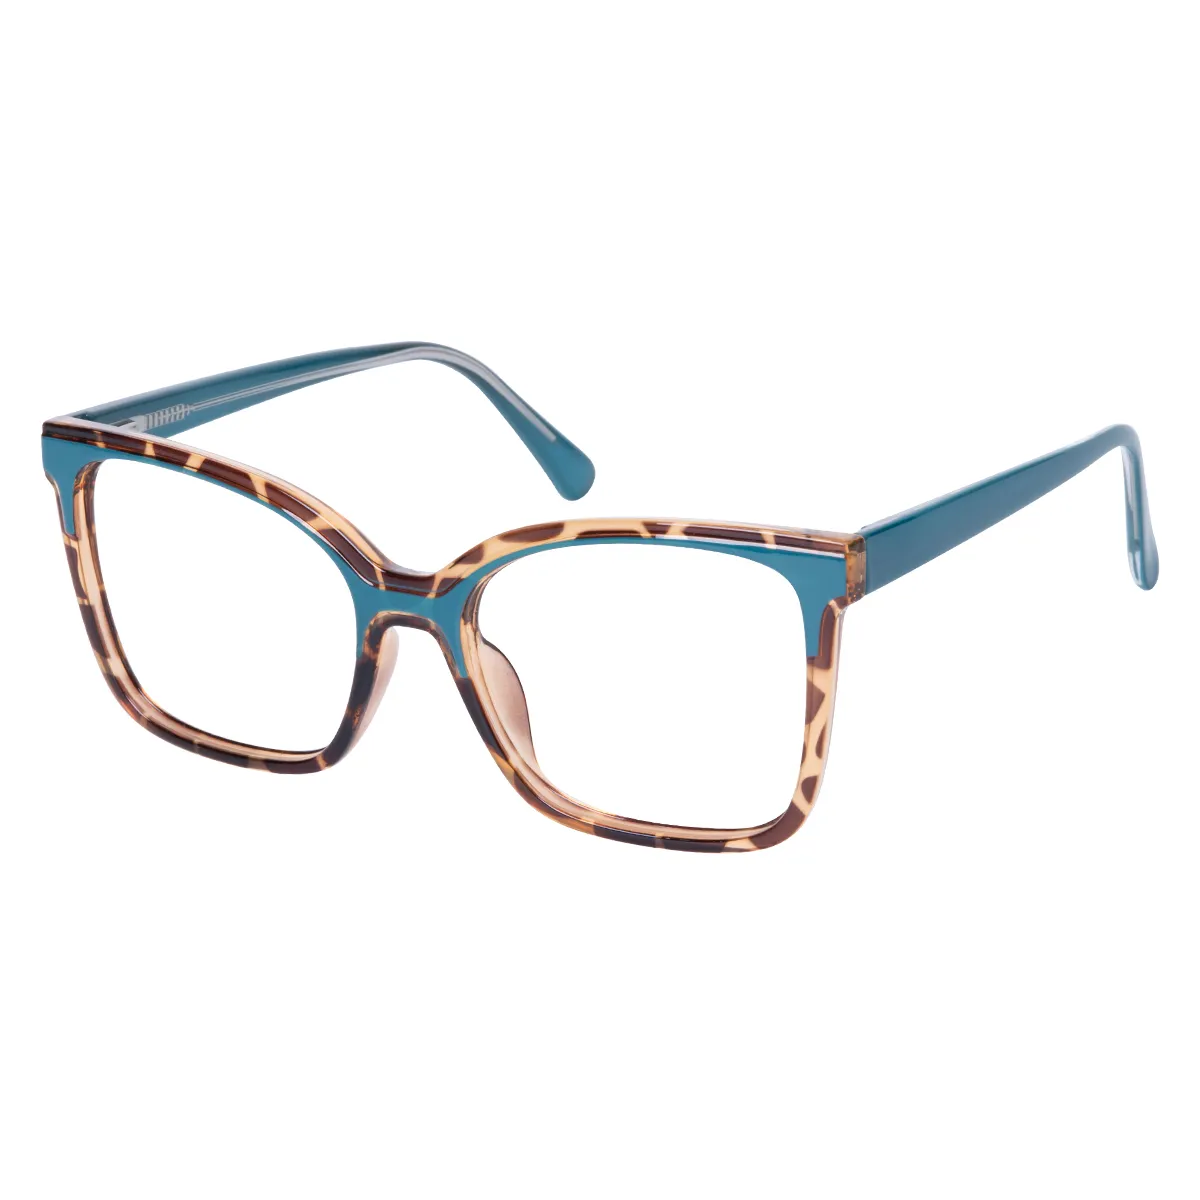 Kelsey - Square Tortoiseshell Blue Glasses for Women